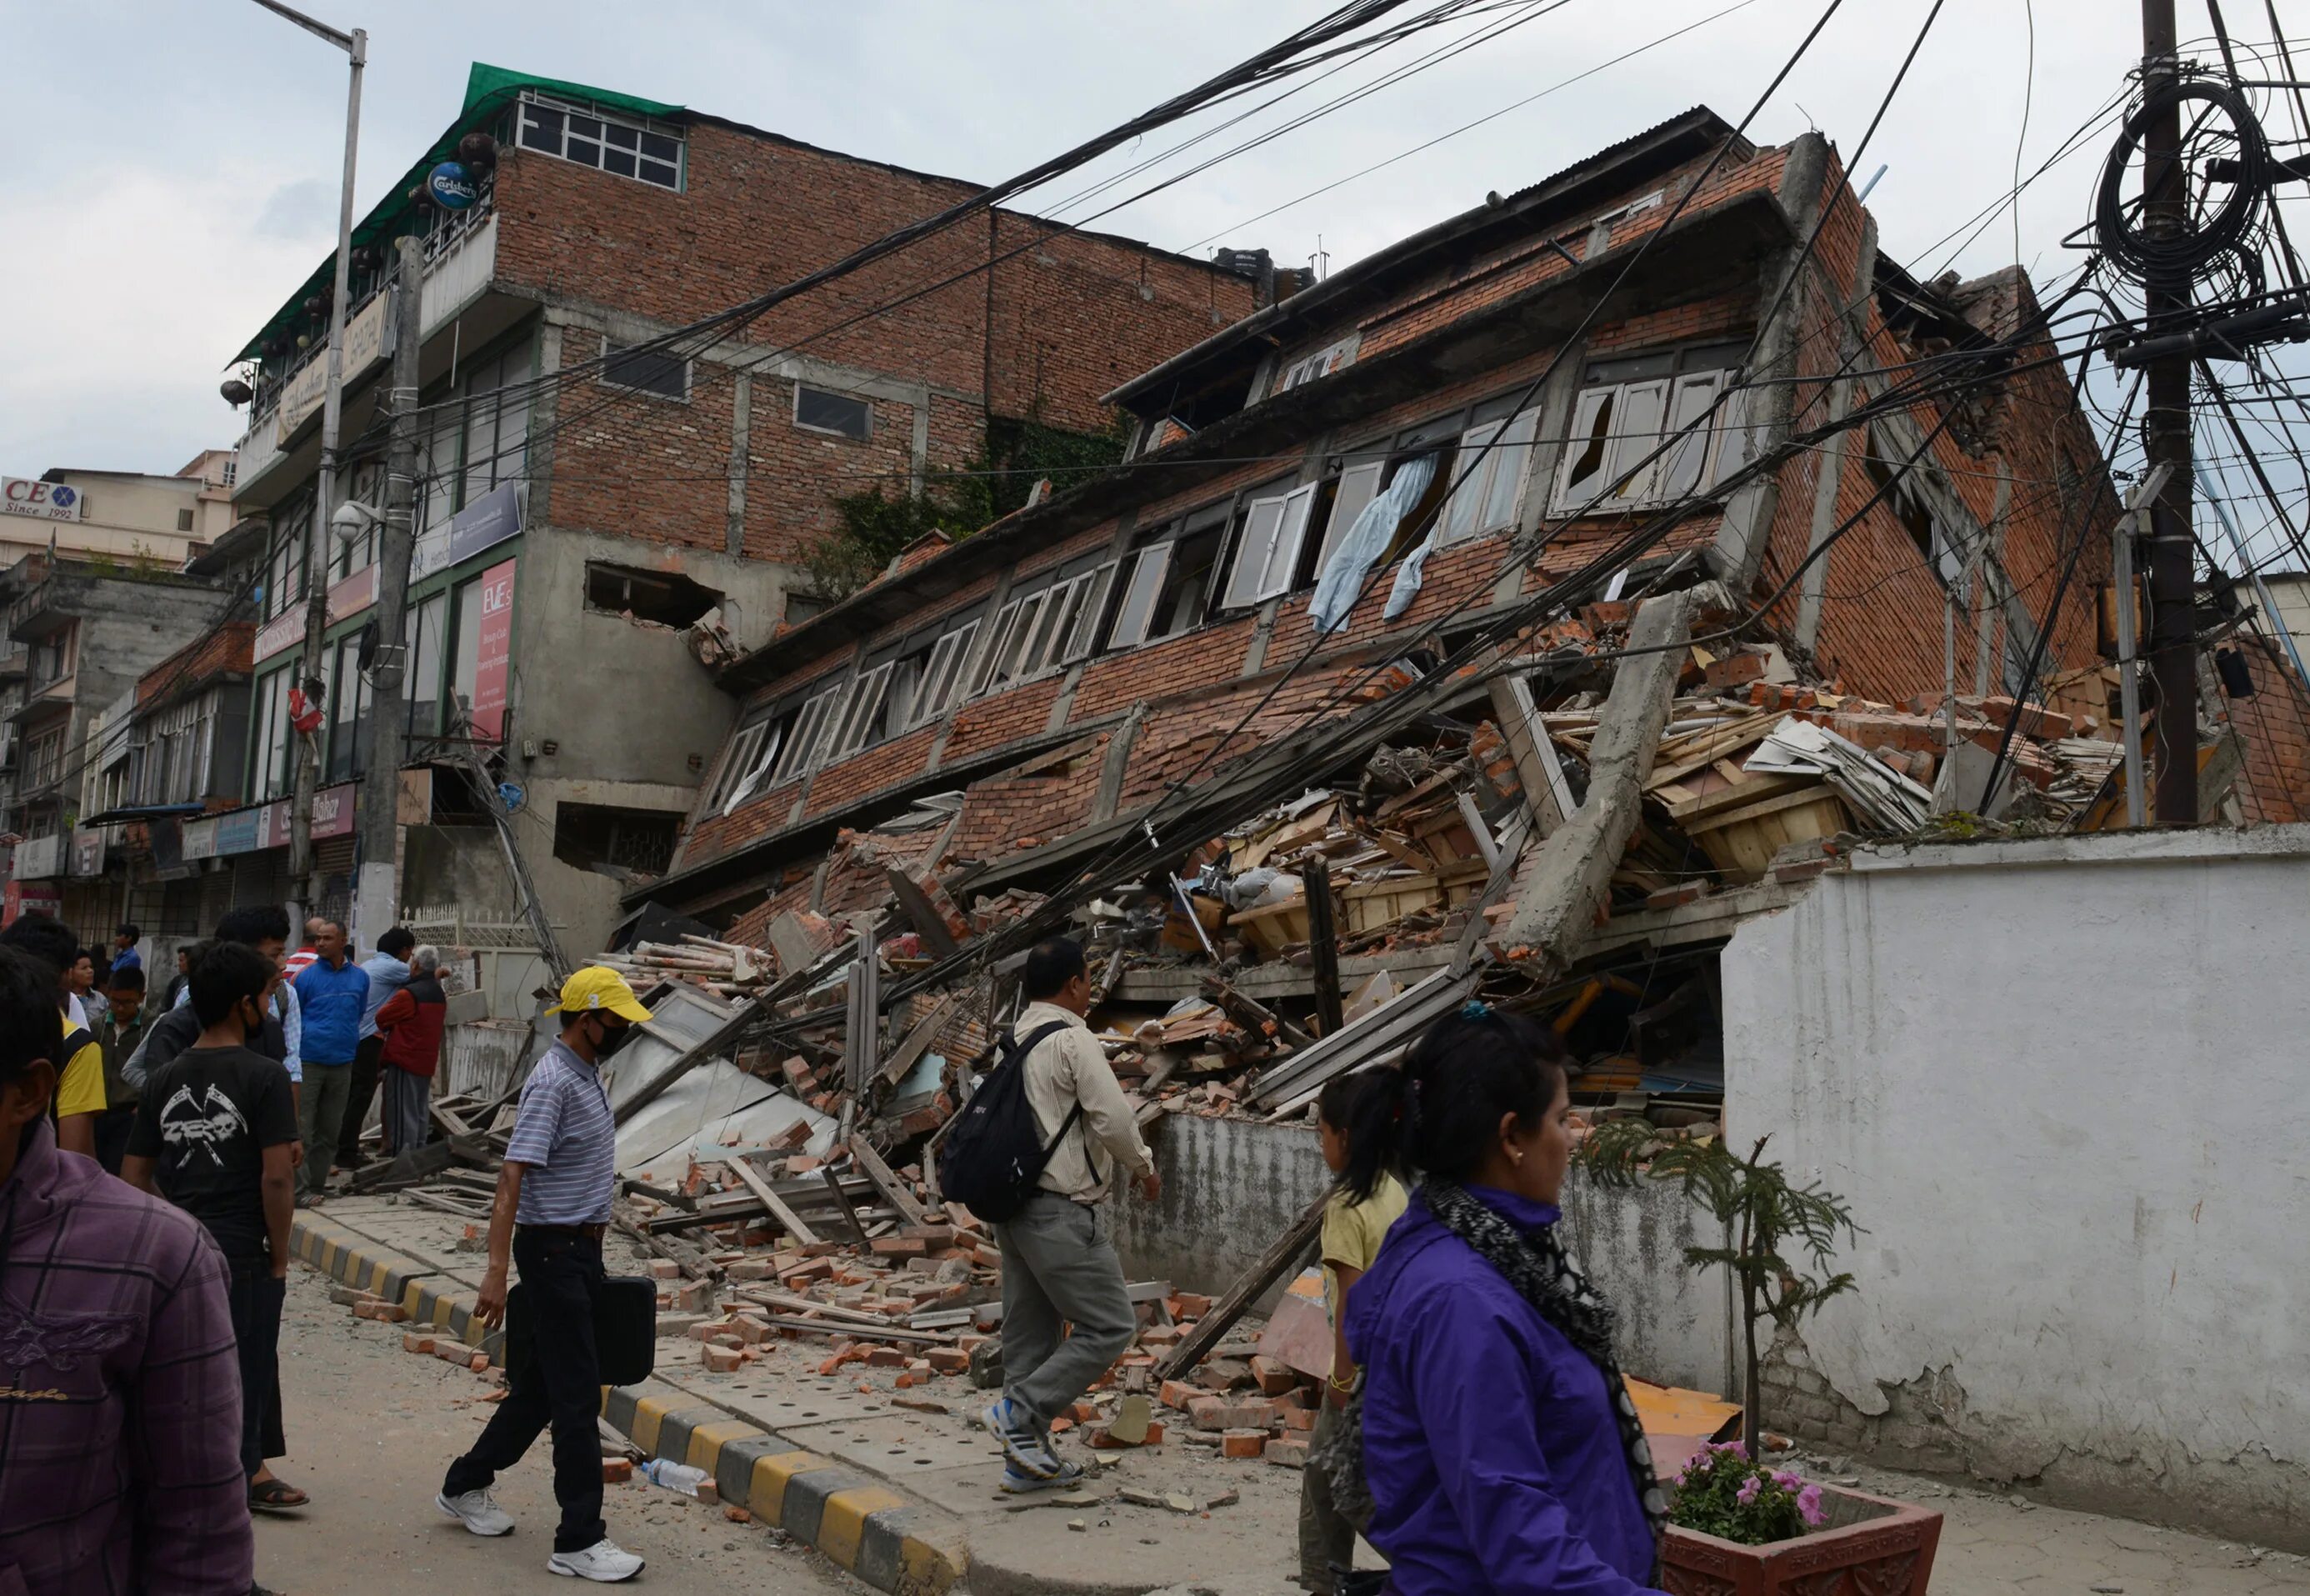 4 8 землетрясение. Землетрясение в Непале 25.04.2015. Катманду землетрясение 2015. 25 Апреля 2015 года в Непале землетрясение. Катманду землетрясение.